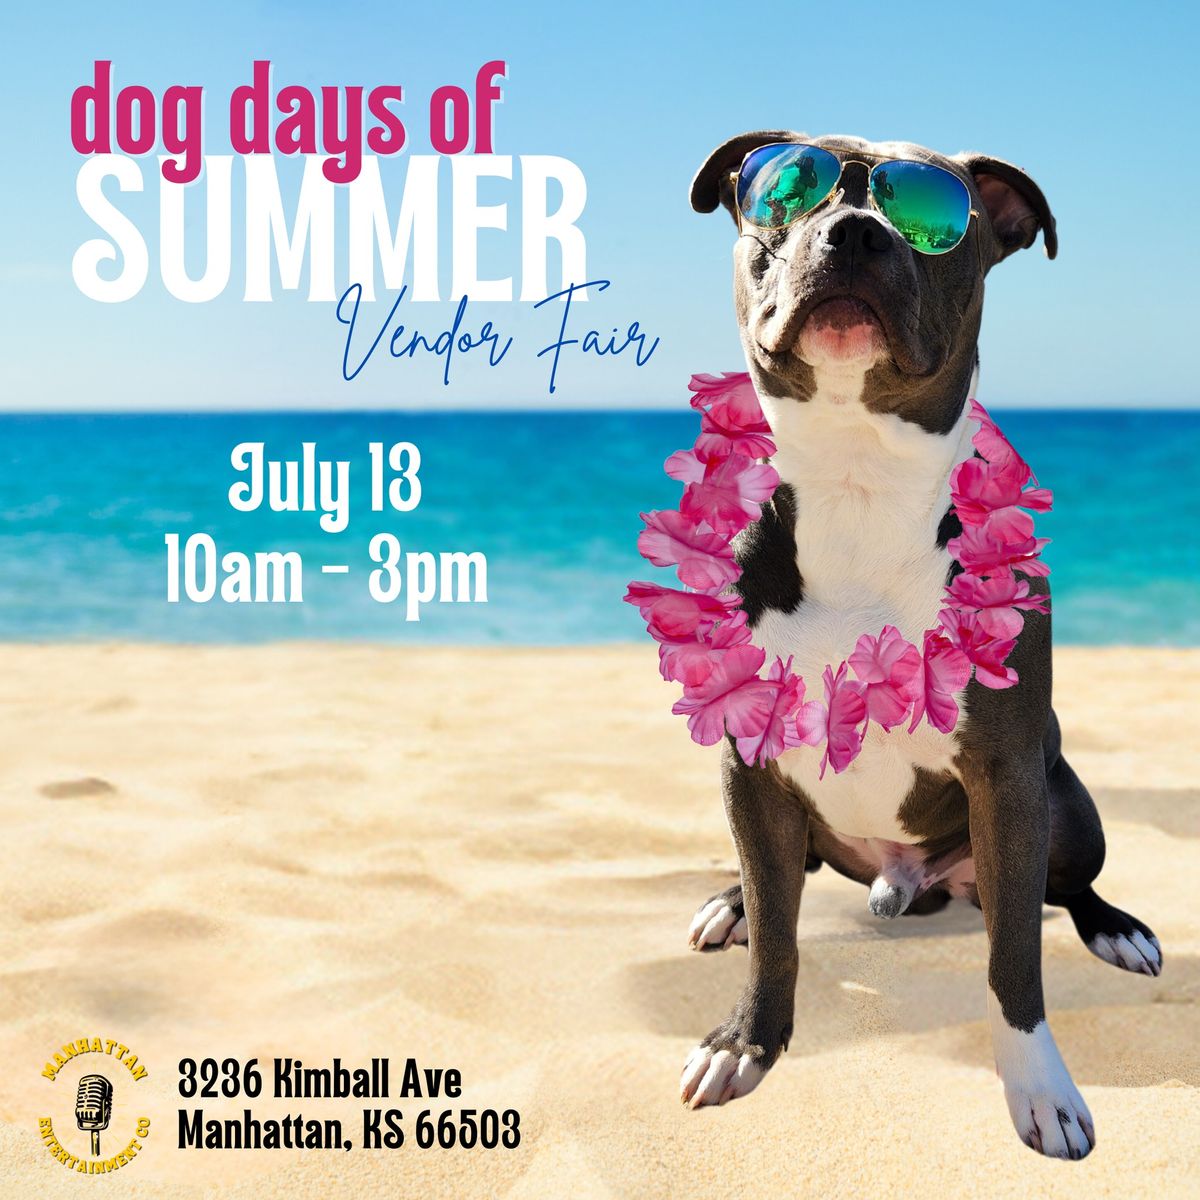 Dog Days of Summer Vendor Fair